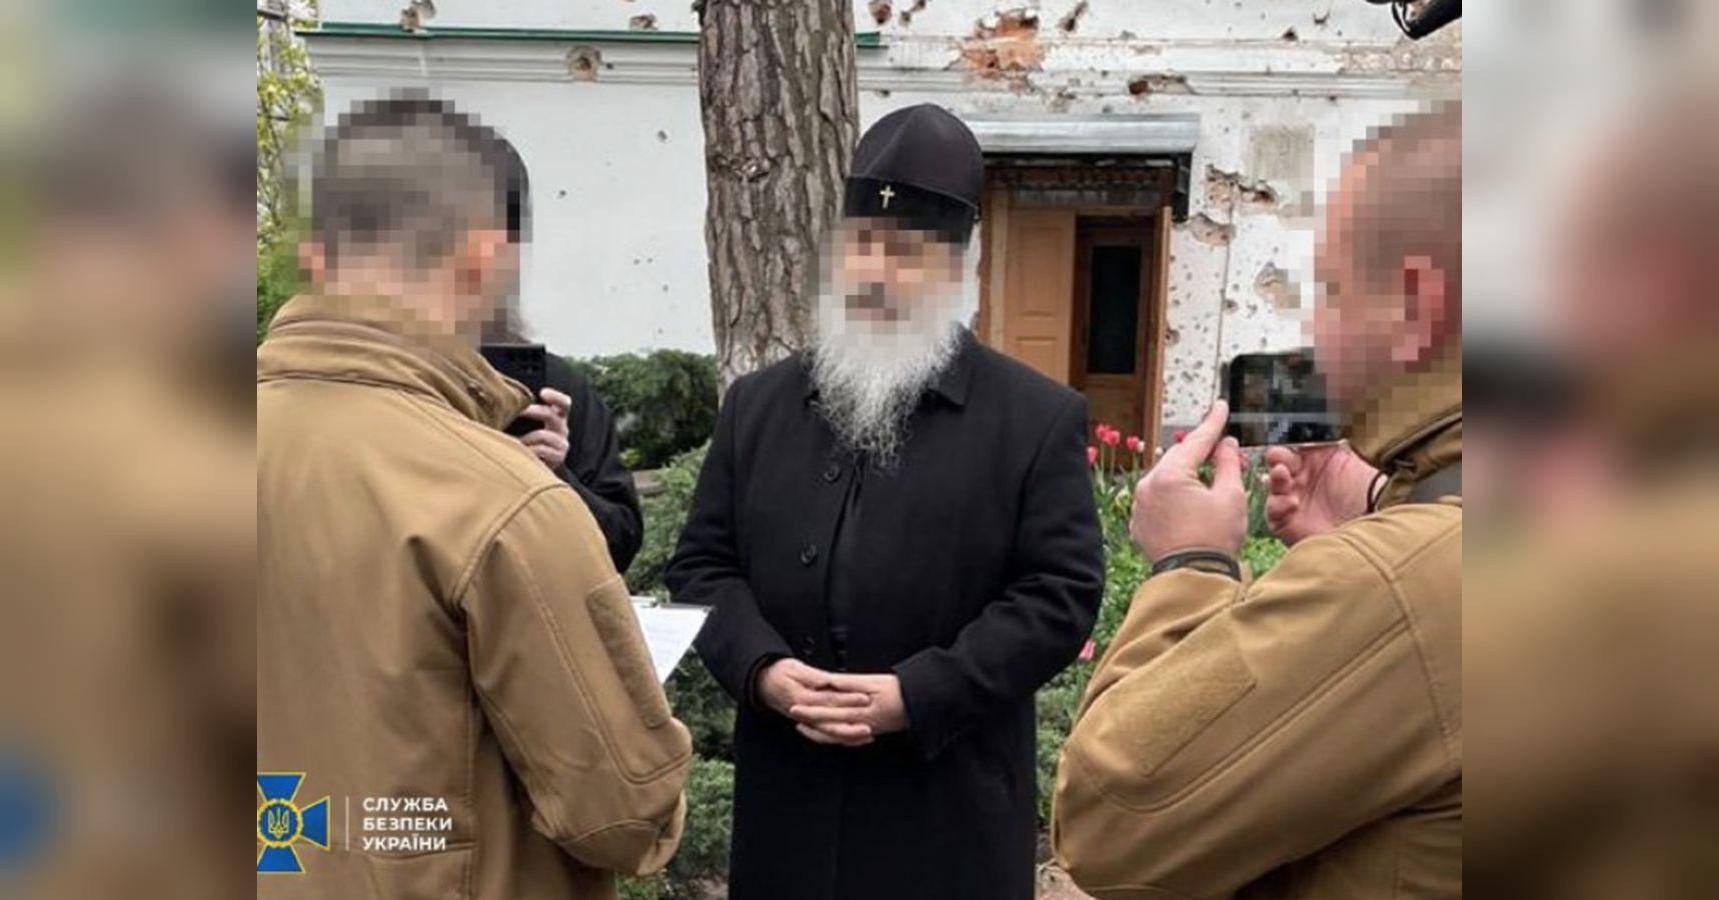 Сдал врагу позиции ВСУ в Донецкой области: СБУ сообщила о подозрении митрополиту Святогорской лавры